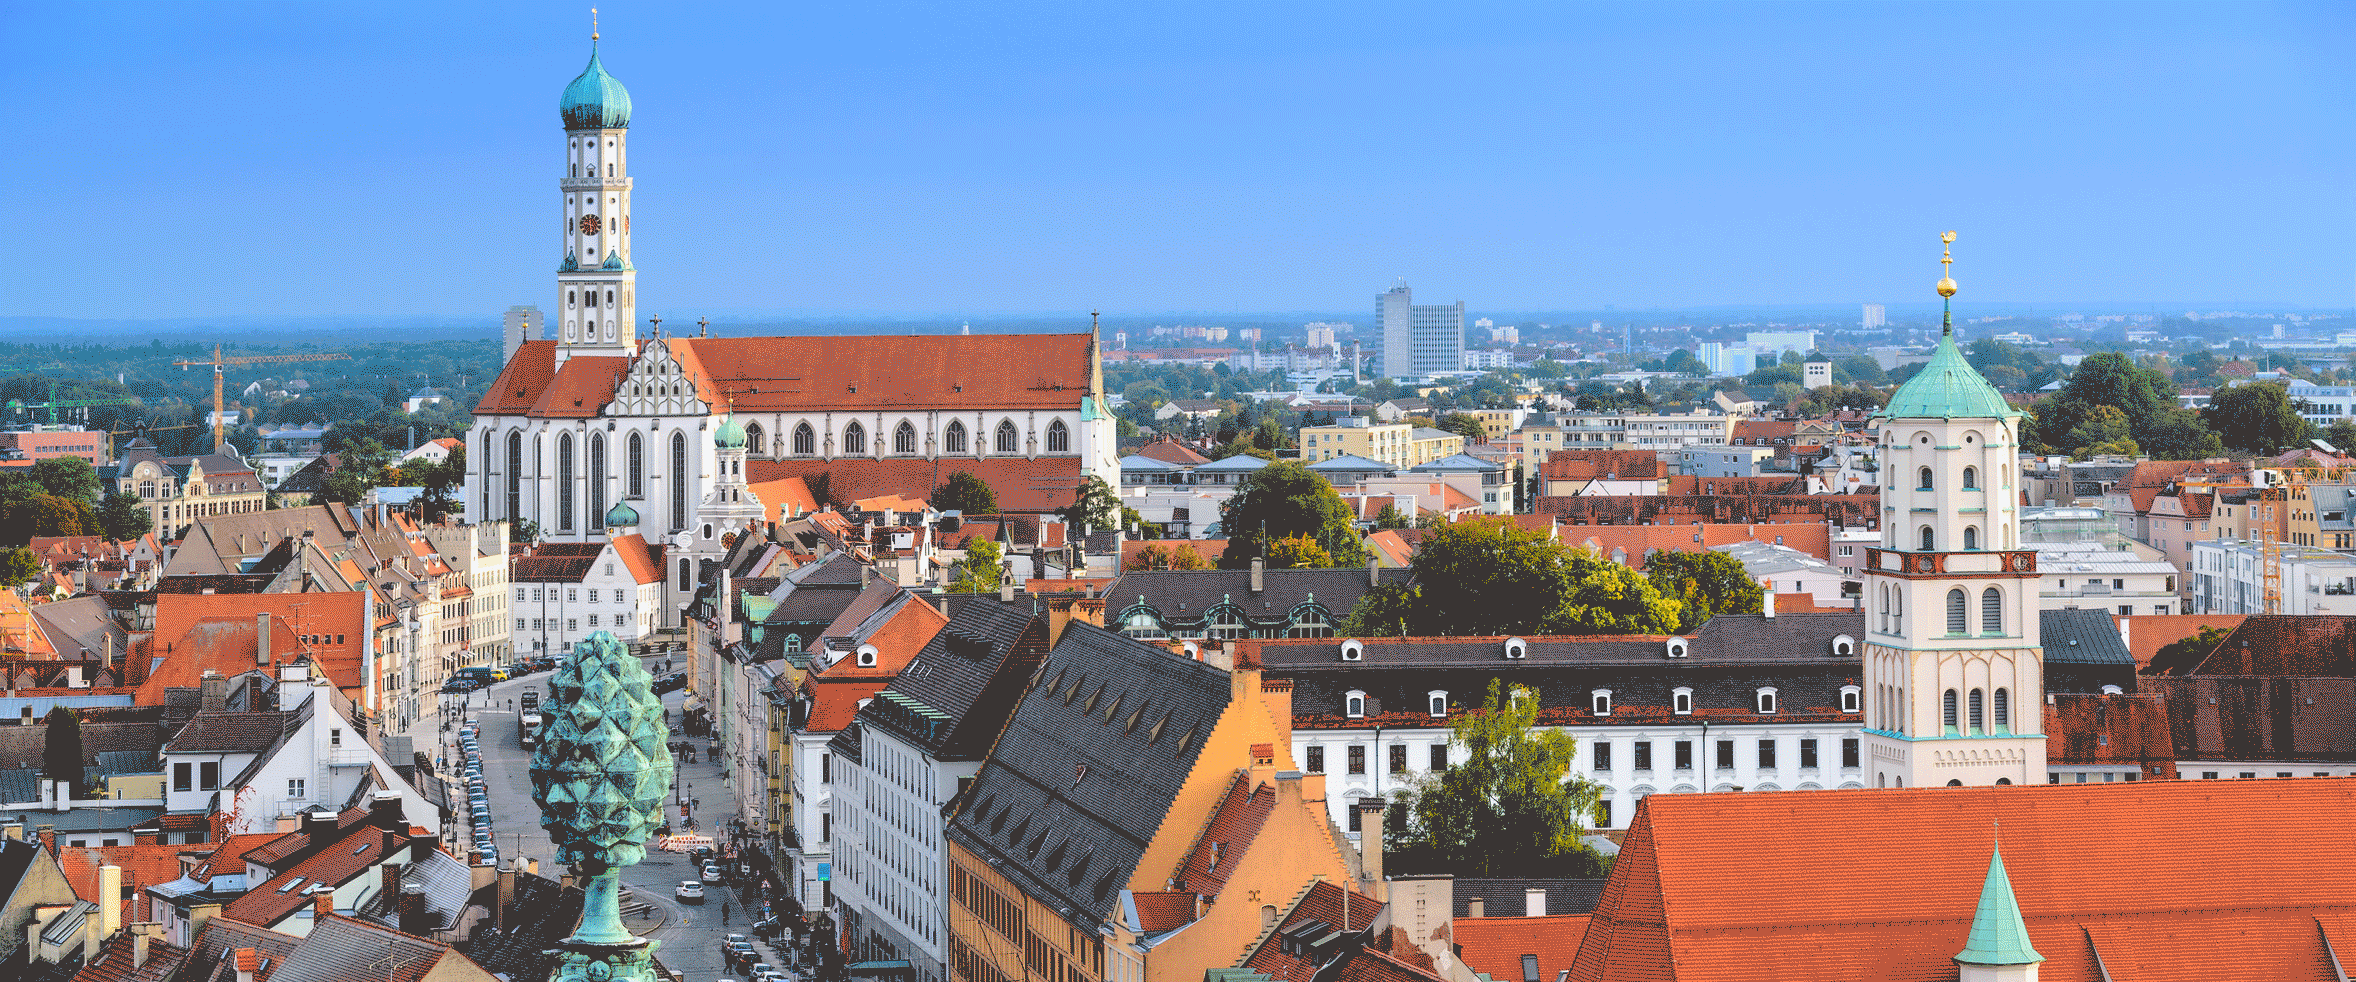 Augsburg - Stadtansicht